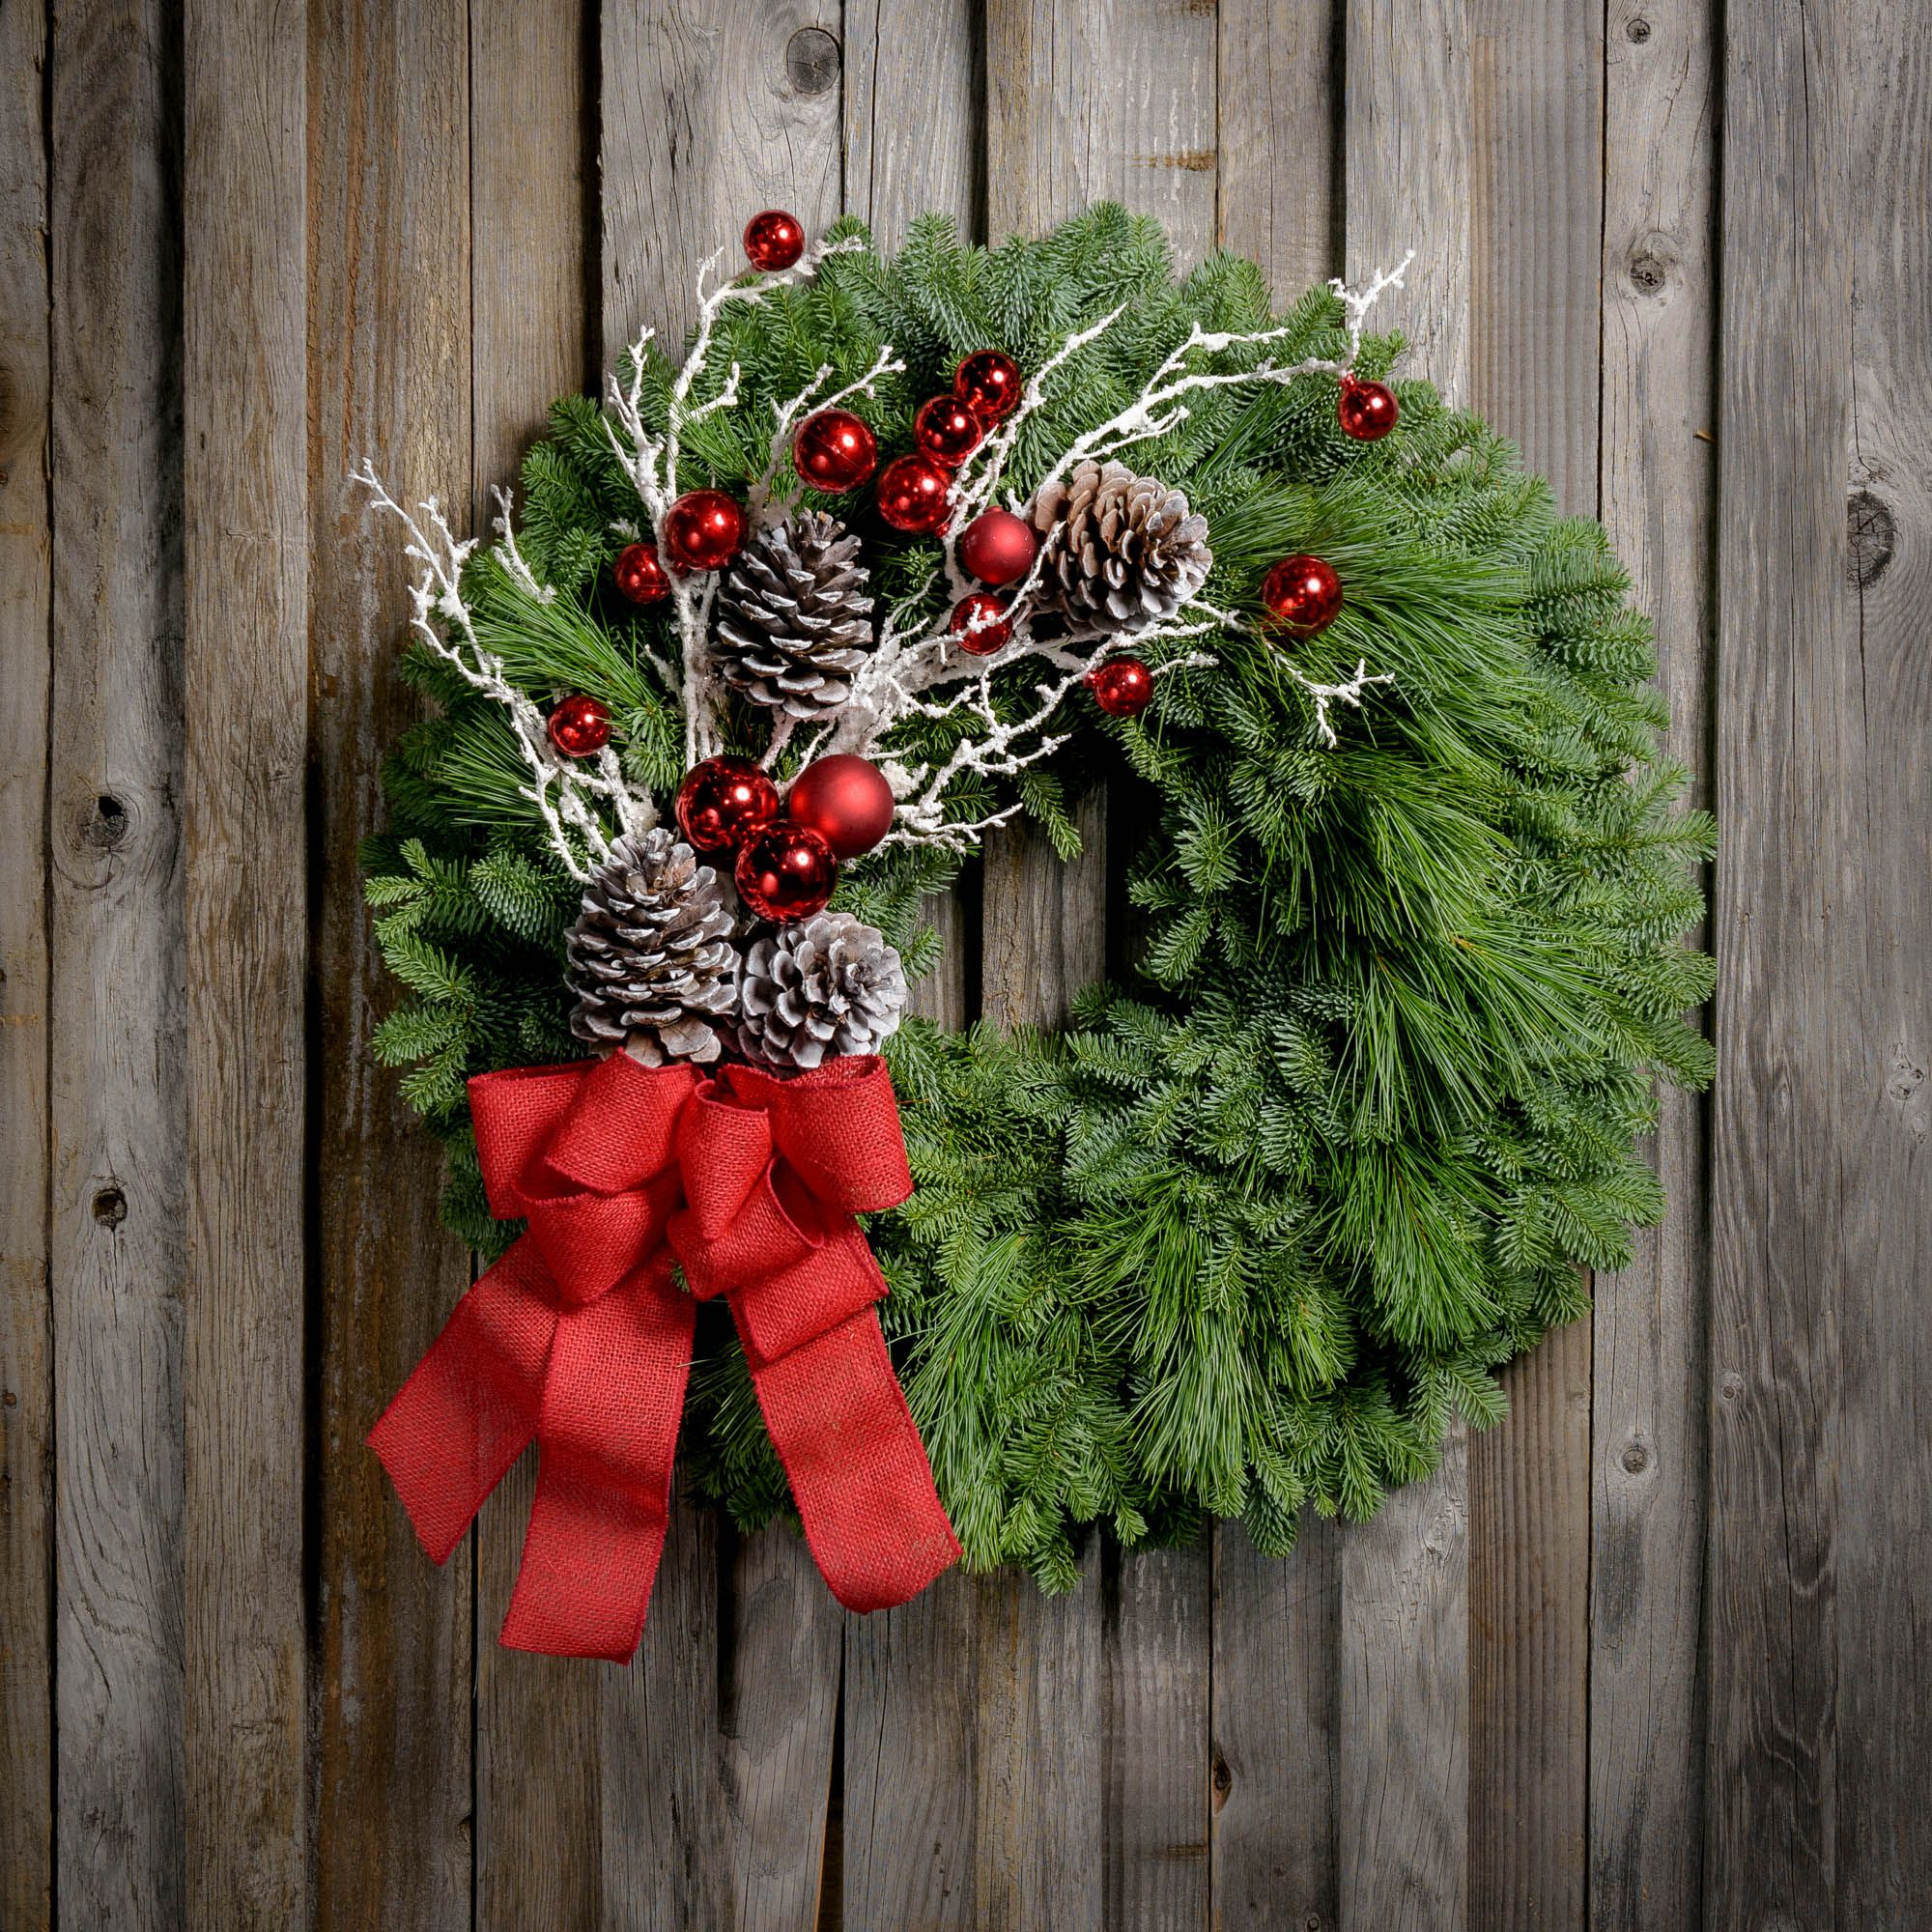 decorated christmas wreaths ideas